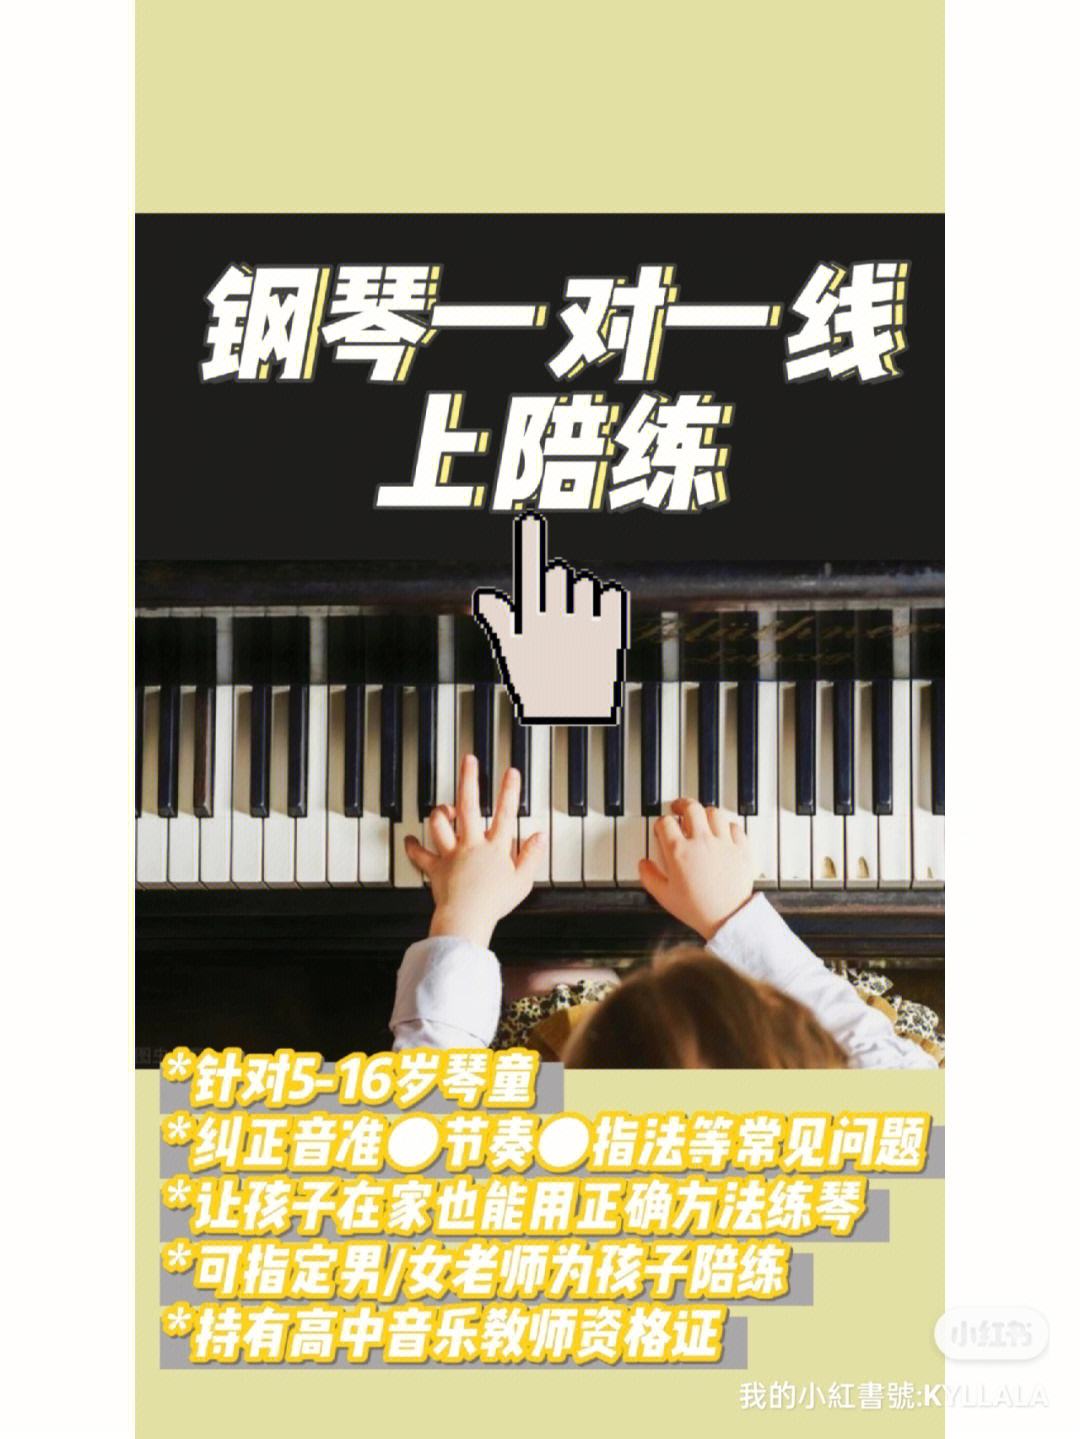 熊猫钢琴陪练老师工资(熊猫钢琴陪练老师应聘方式)